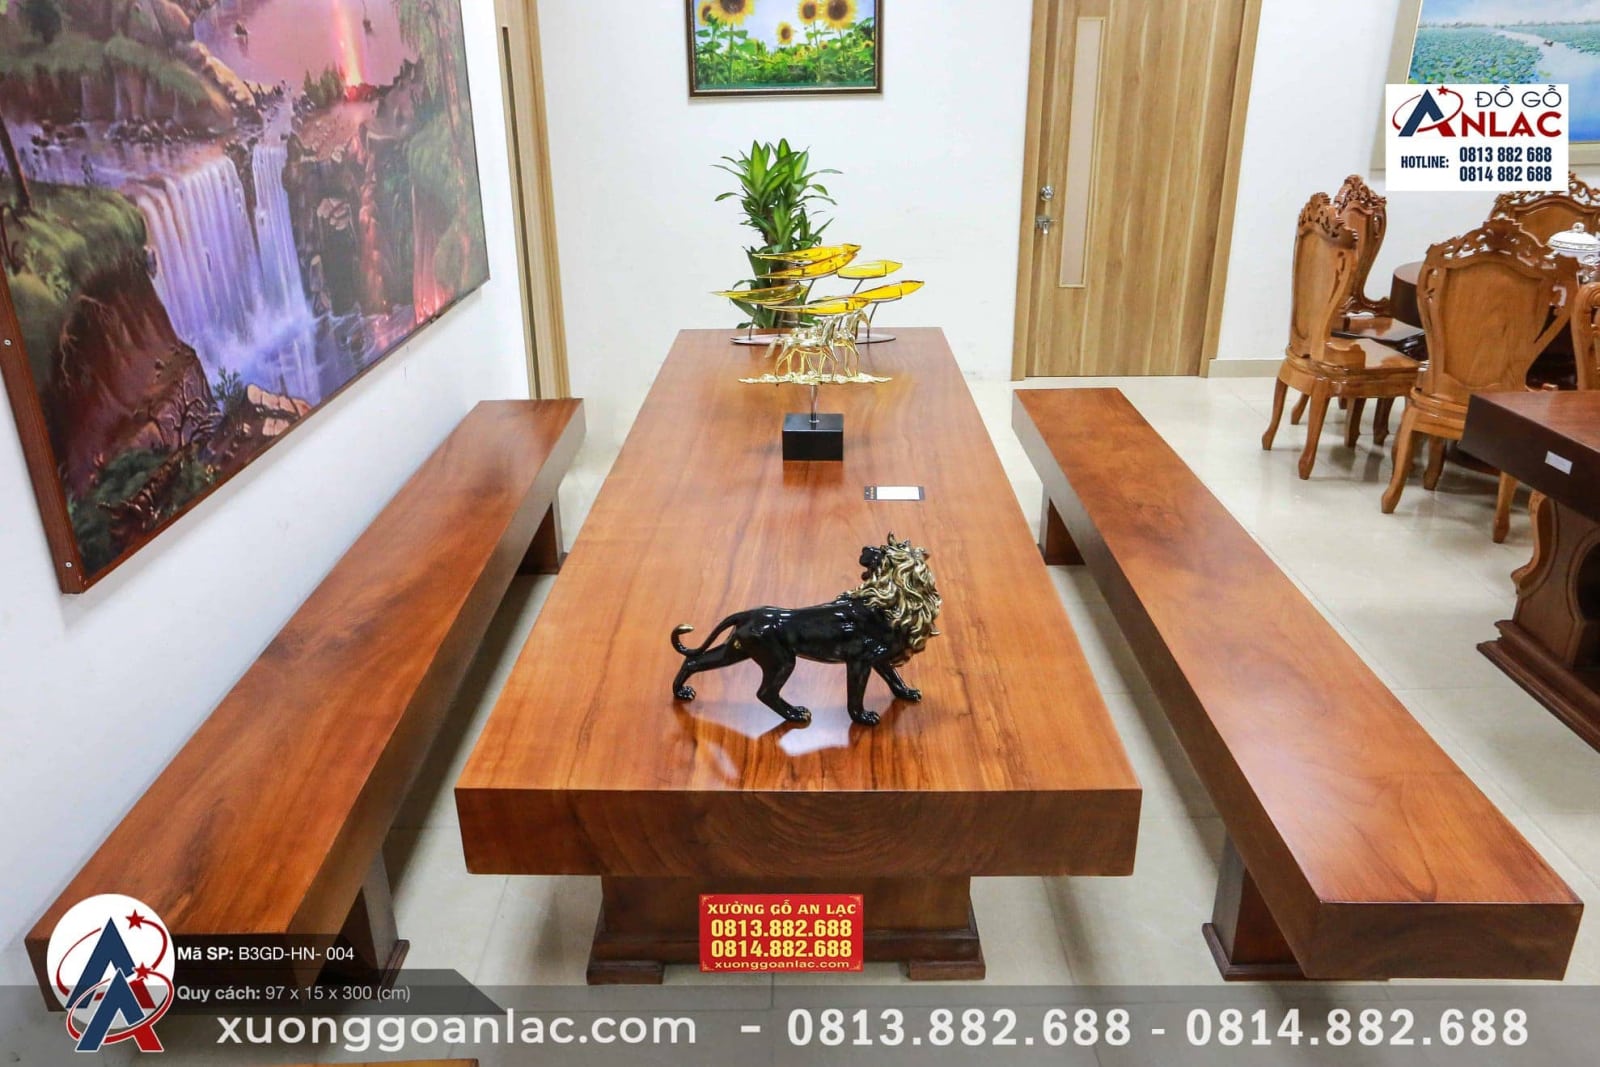 Bộ bàn ghế K3 gỗ cẩm Hồng Thái Nguyên là sản phẩm phải có trong những thiết kế nội thất đẳng cấp. Với chất liệu gỗ cẩm Hồng sang trọng và đẹp mắt, bộ bàn ghế sẽ là điểm nhấn trang trí tuyệt vời cho phòng khách, phòng ăn hoặc phòng làm việc của bạn.